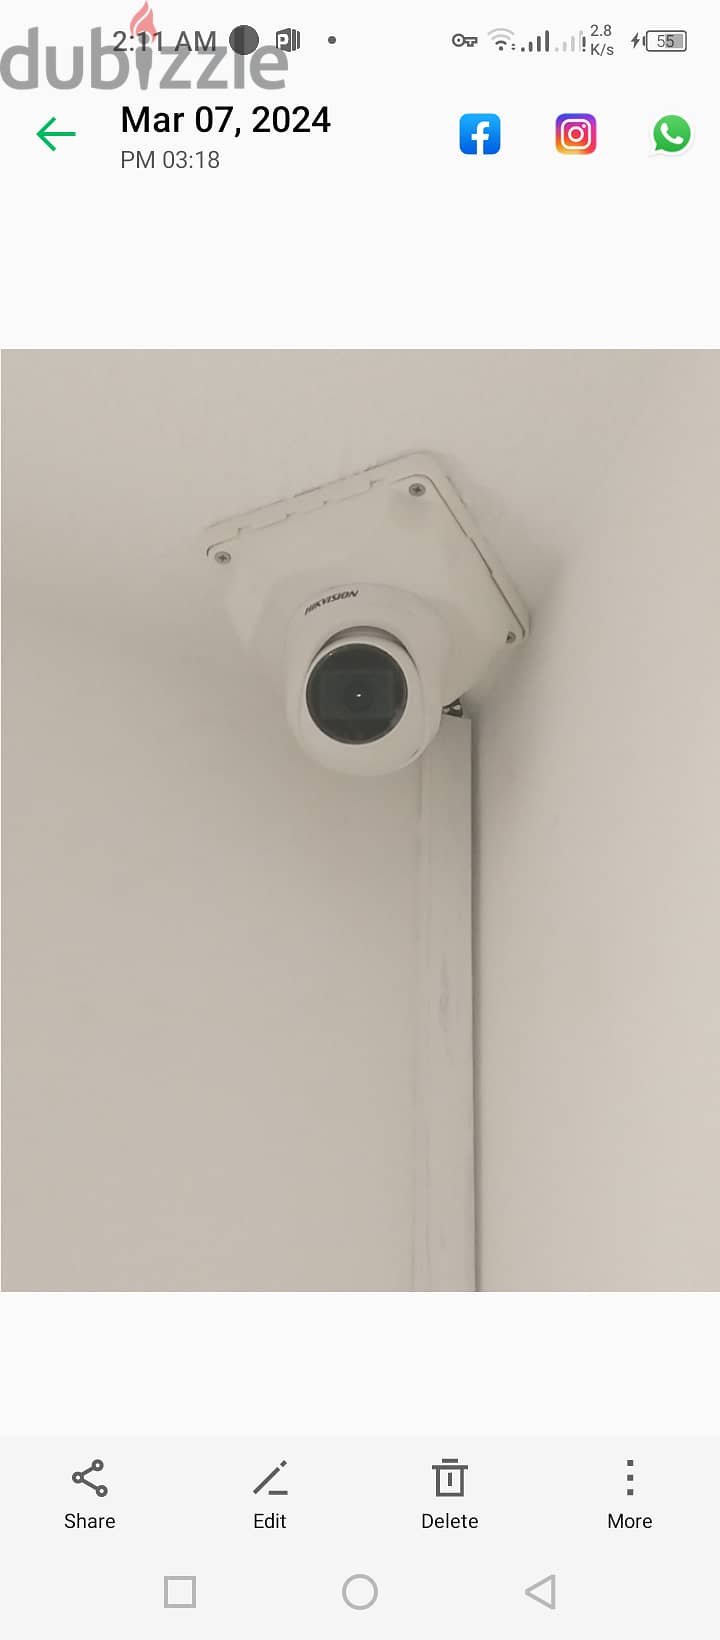 CCTV camera installation service 5